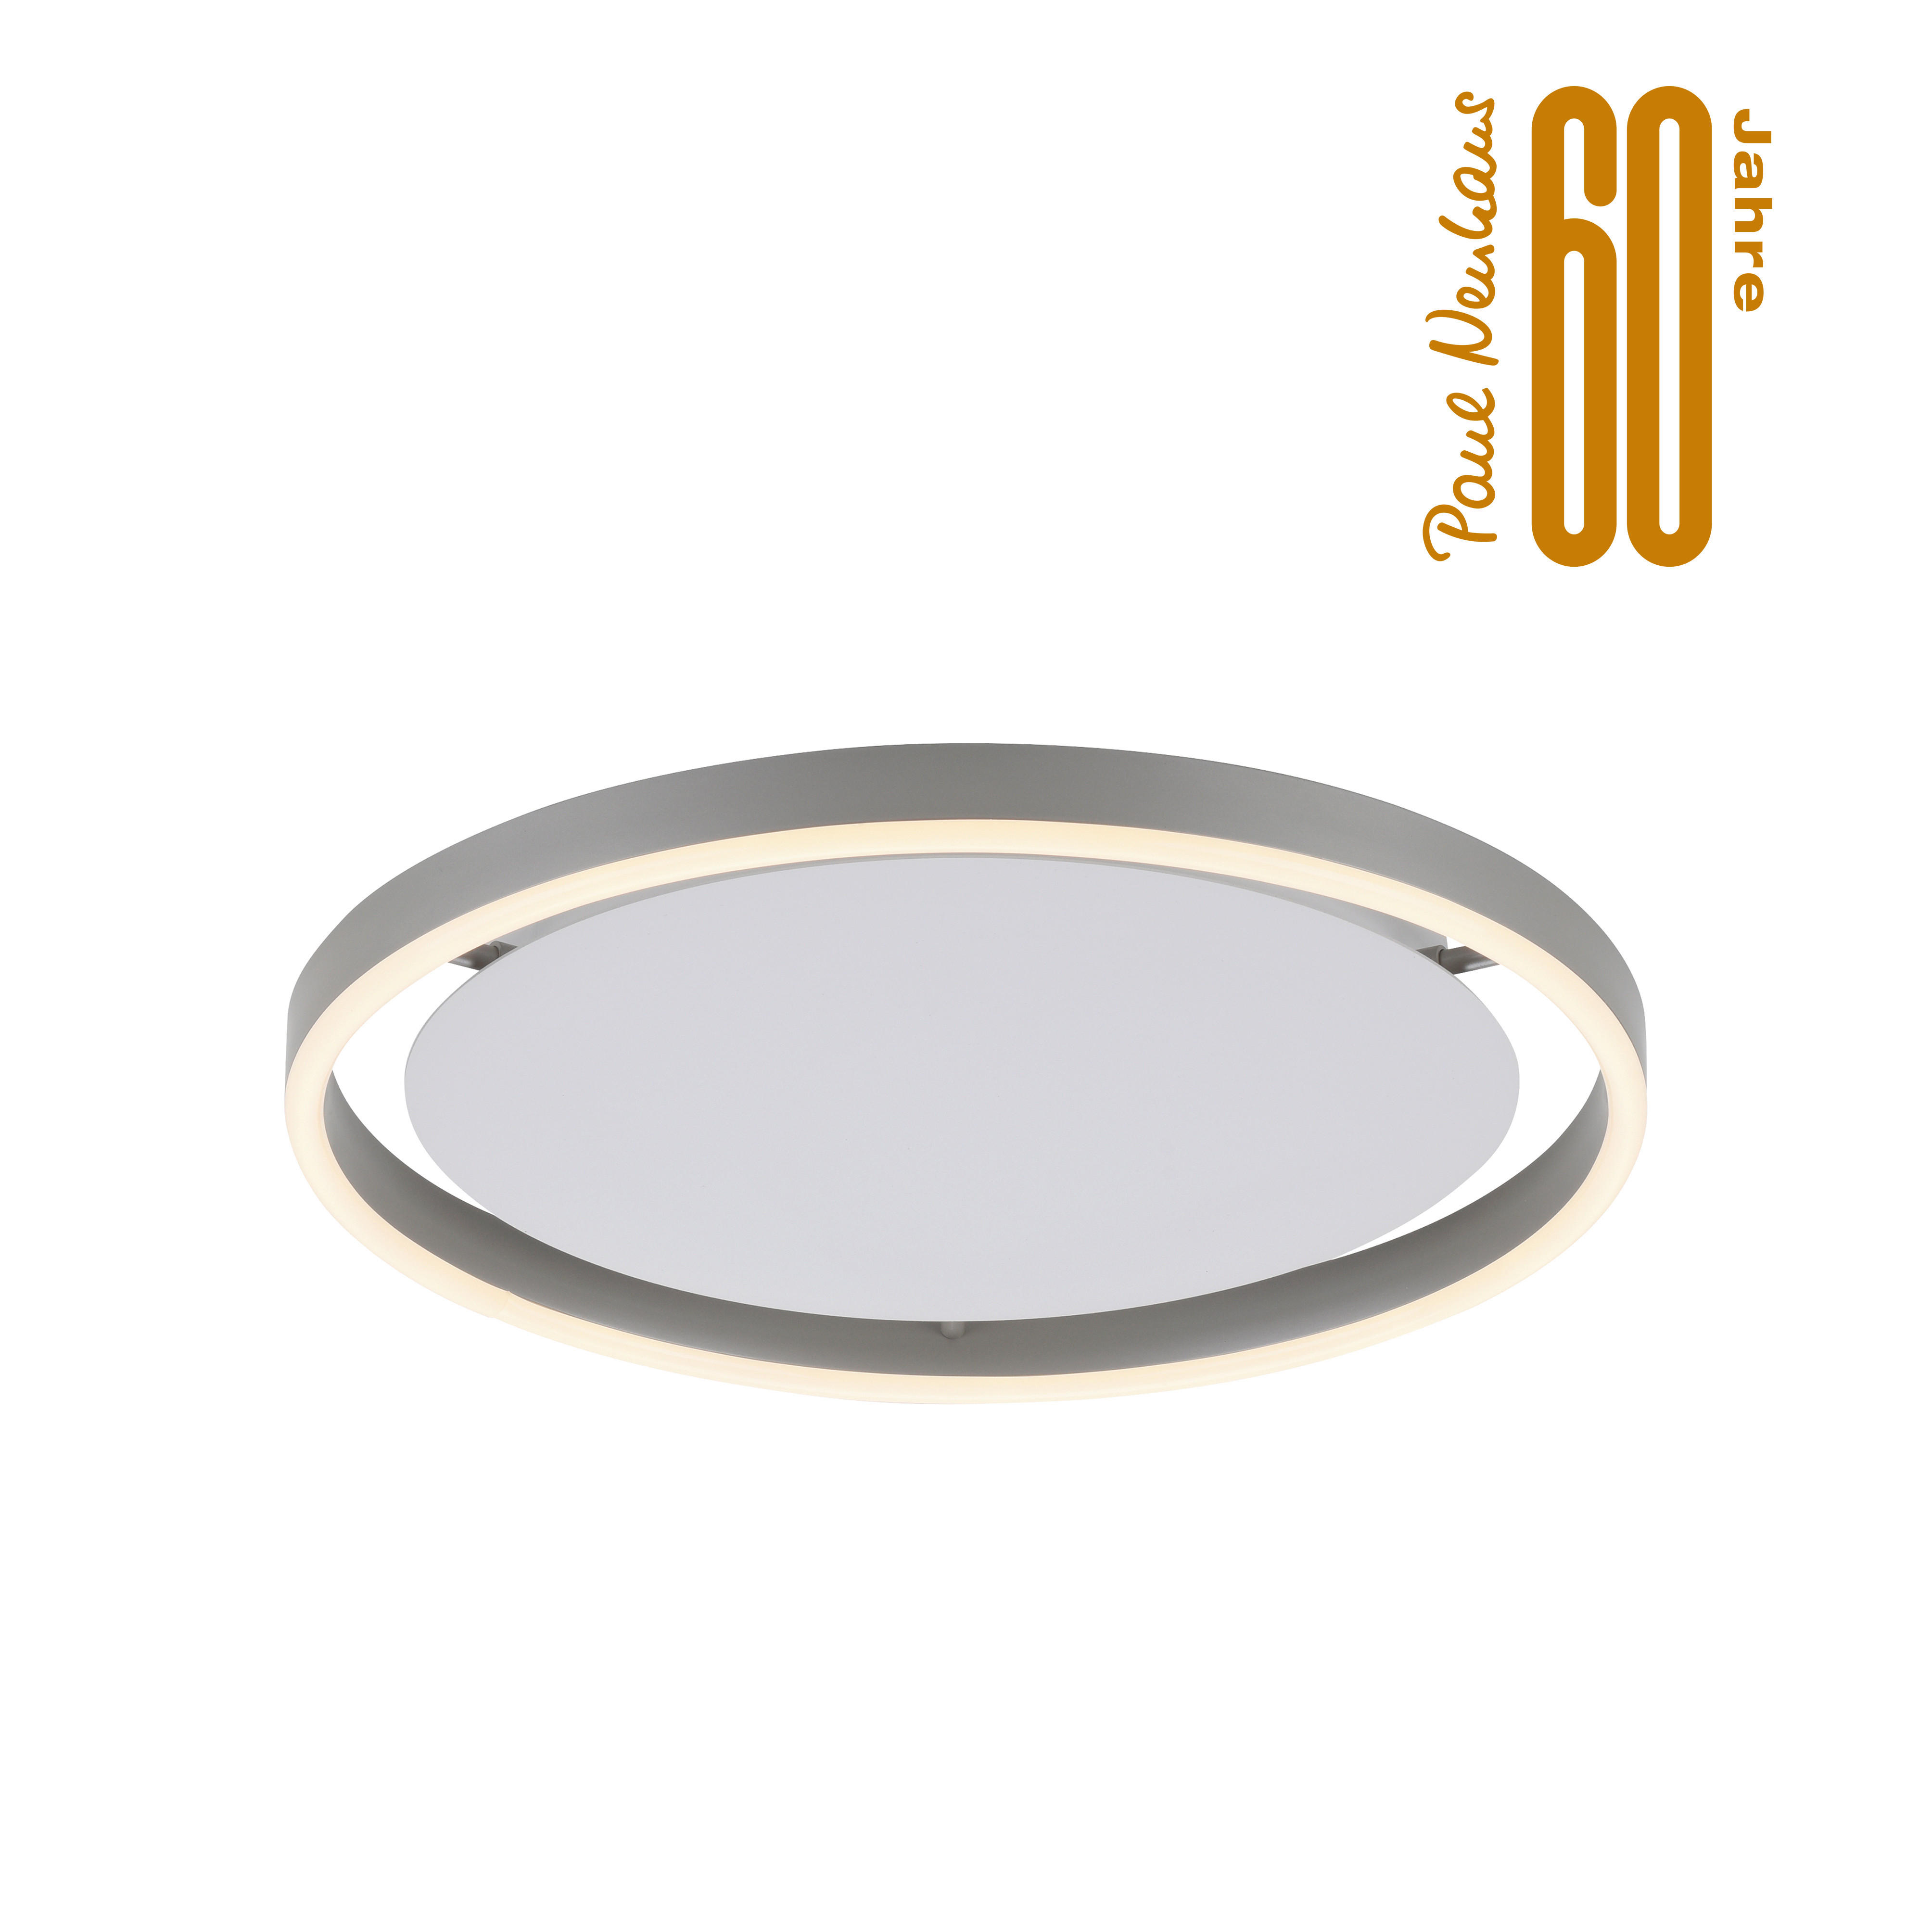 LED-DECKENLEUCHTE 39,3/39,3/5,3 cm   - Alufarben, Design, Kunststoff/Metall (39,3/39,3/5,3cm)